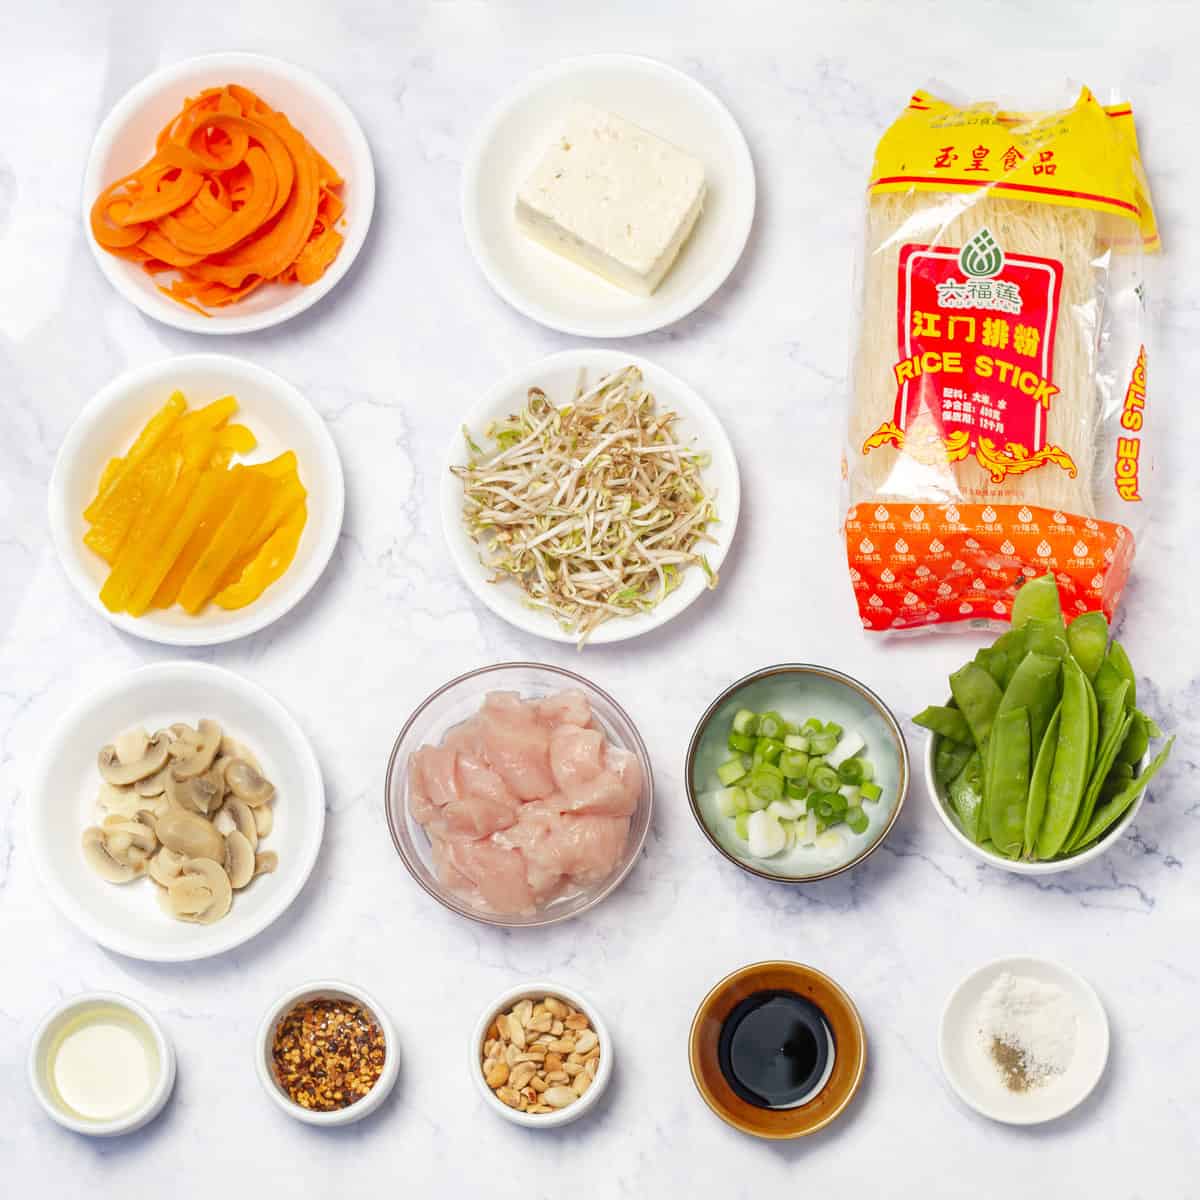 Thai Noodles Ingredients